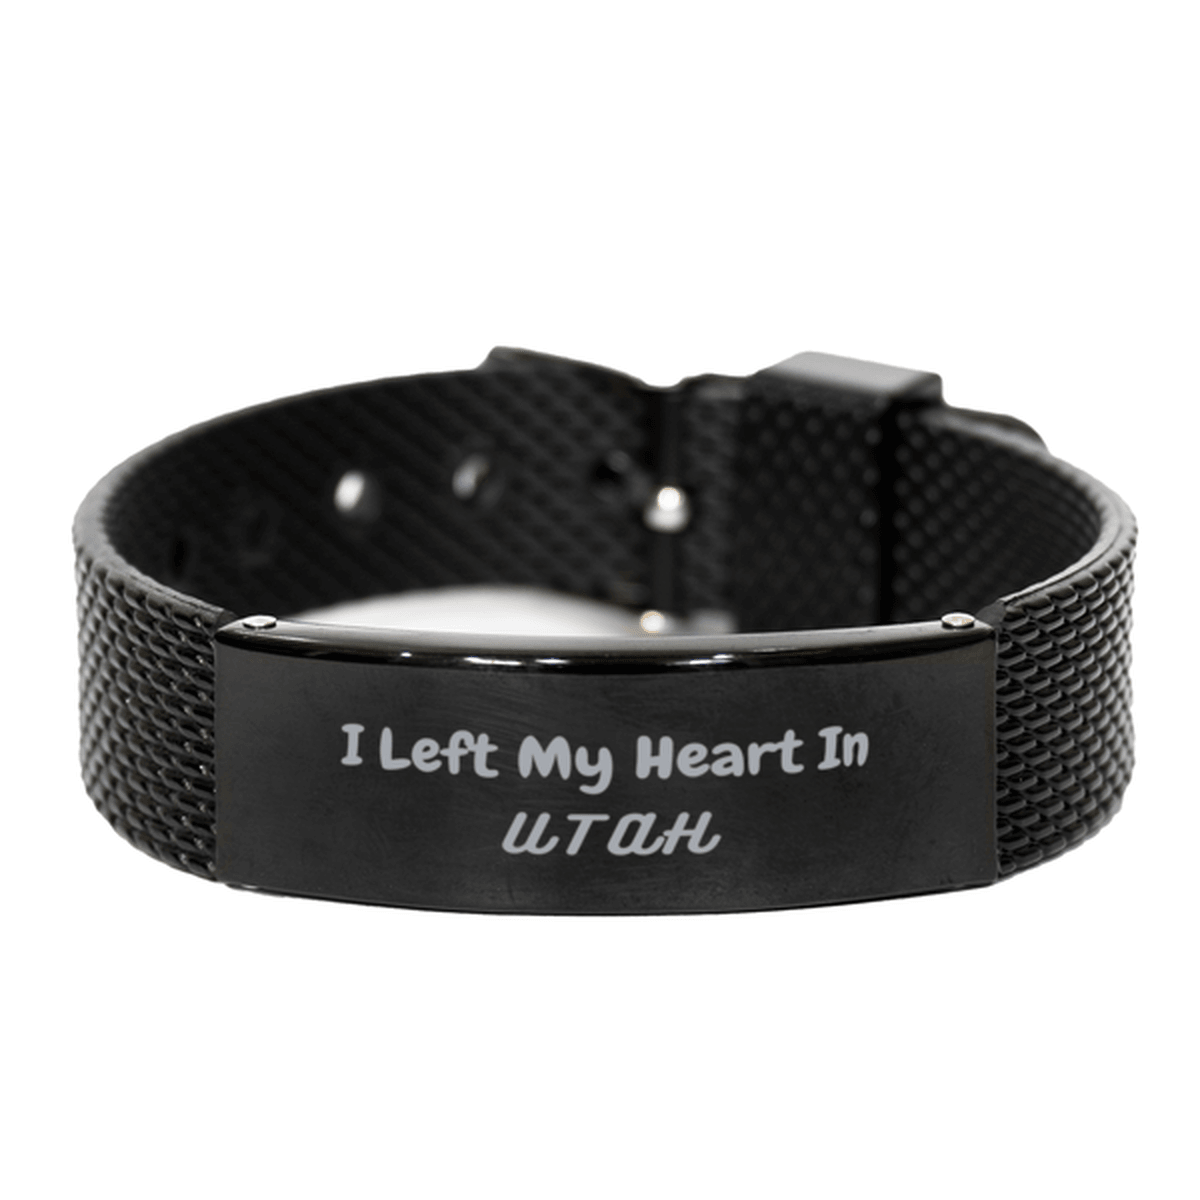 I Left My Heart In Utah Gifts, Meaningful Utah State for Friends, Men, Women. Black Shark Mesh Bracelet for Utah People - Mallard Moon Gift Shop